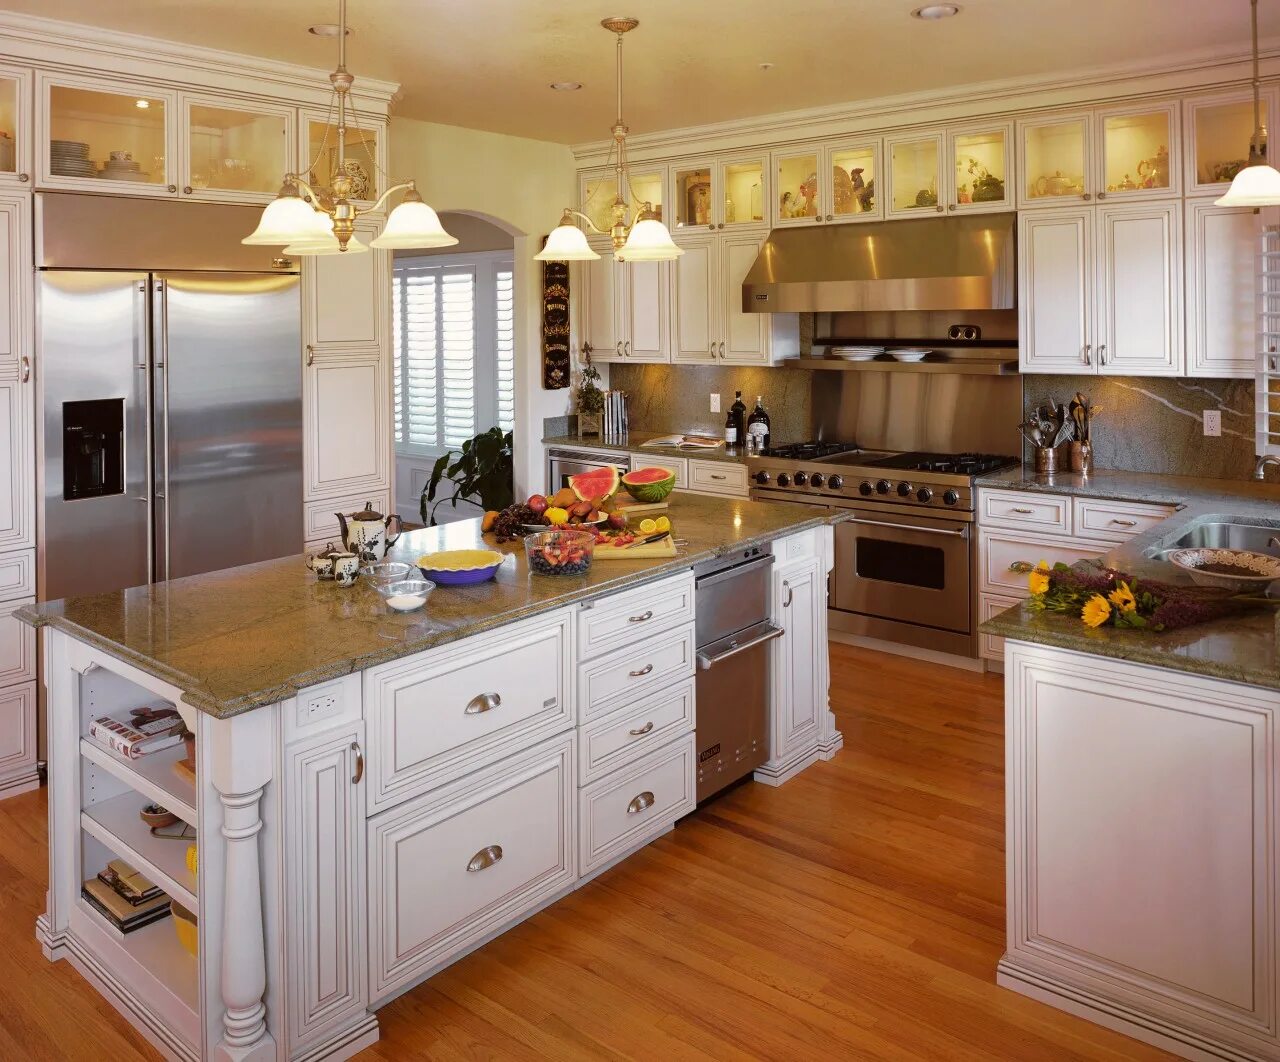 Кухонная комната. Комната кухня. Кухни разных цветов. Комнаты кухни зарубежные. Красивые комнаты кухни